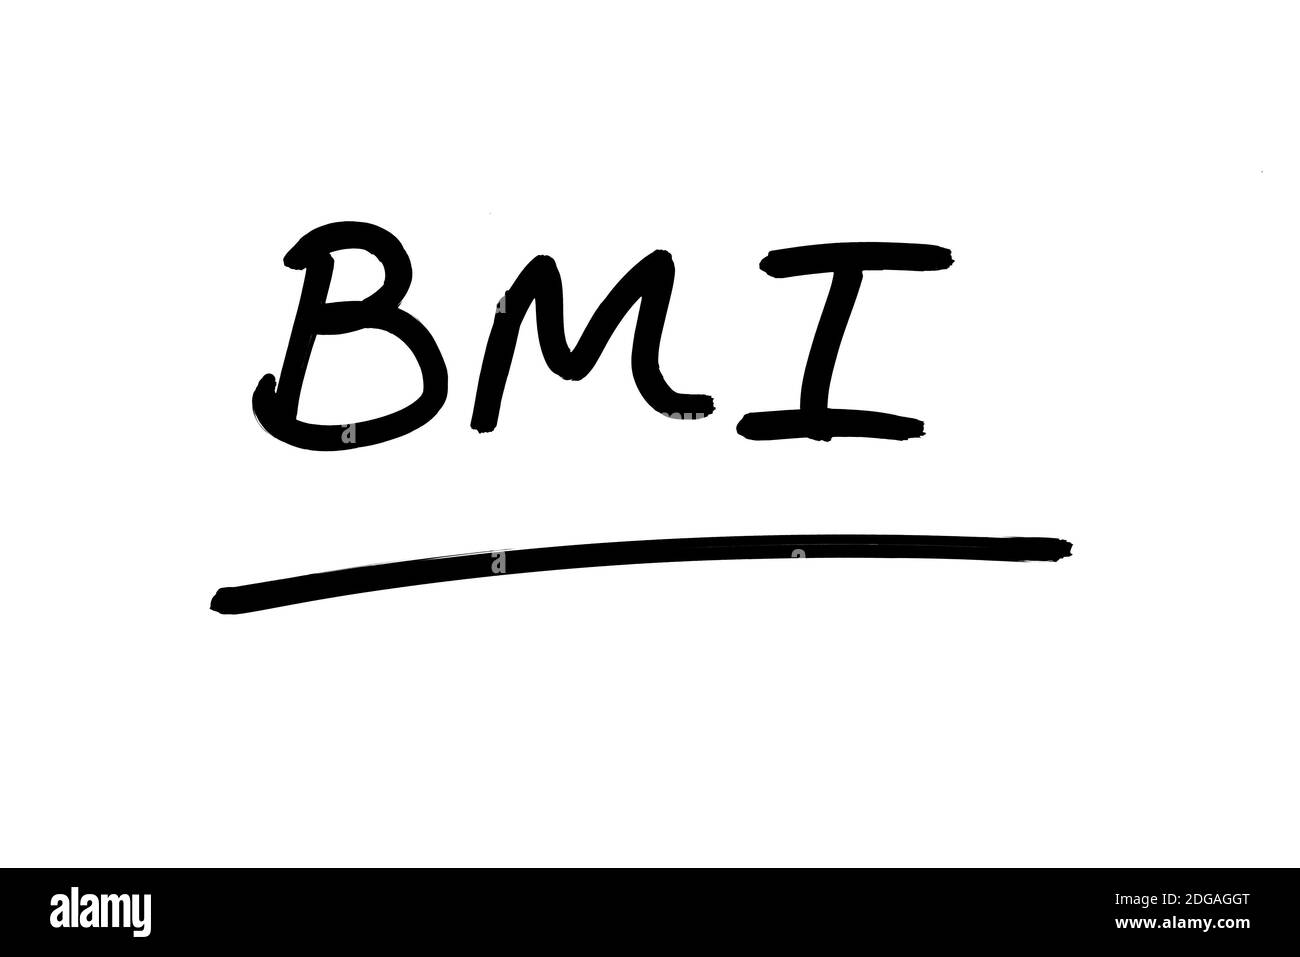 Die Abkürzung BMI - bedeutet Body Mass Index, handgeschrieben auf weißem Hintergrund. Stockfoto